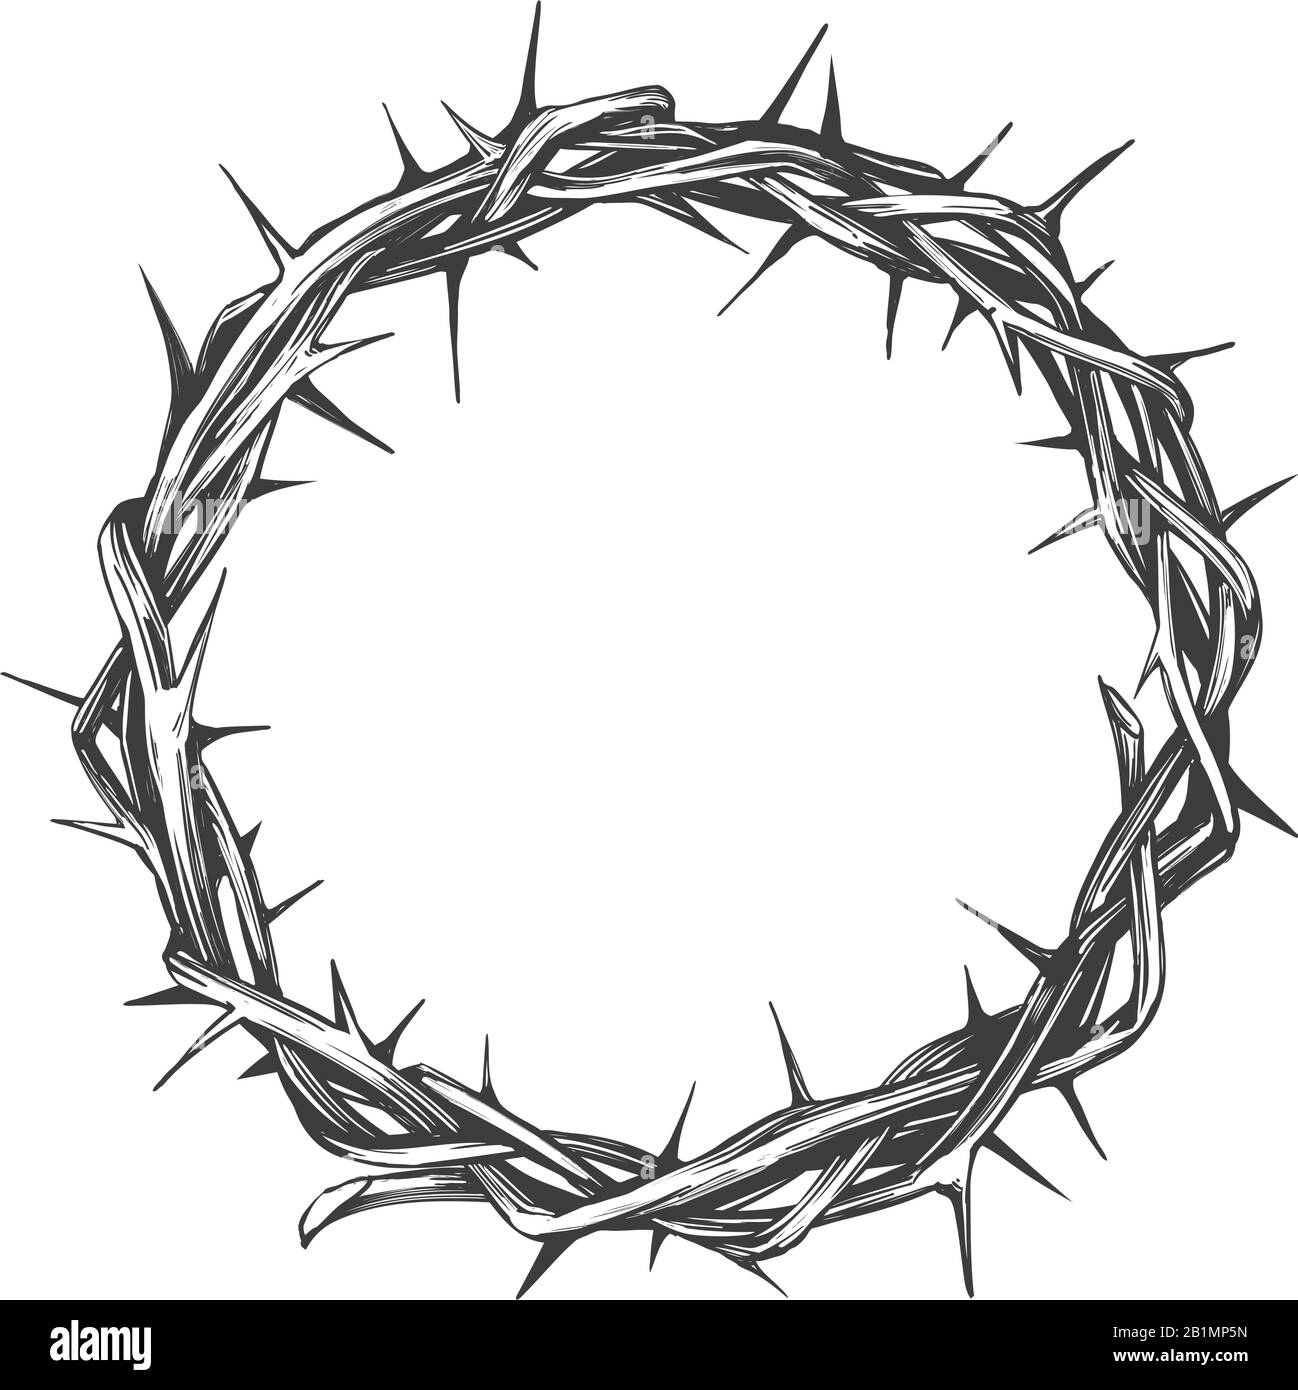 Couronne d'épines, symbole religieux de pâques du christianisme illustration vectorielle dessinée à la main logo d'esquisse Illustration de Vecteur